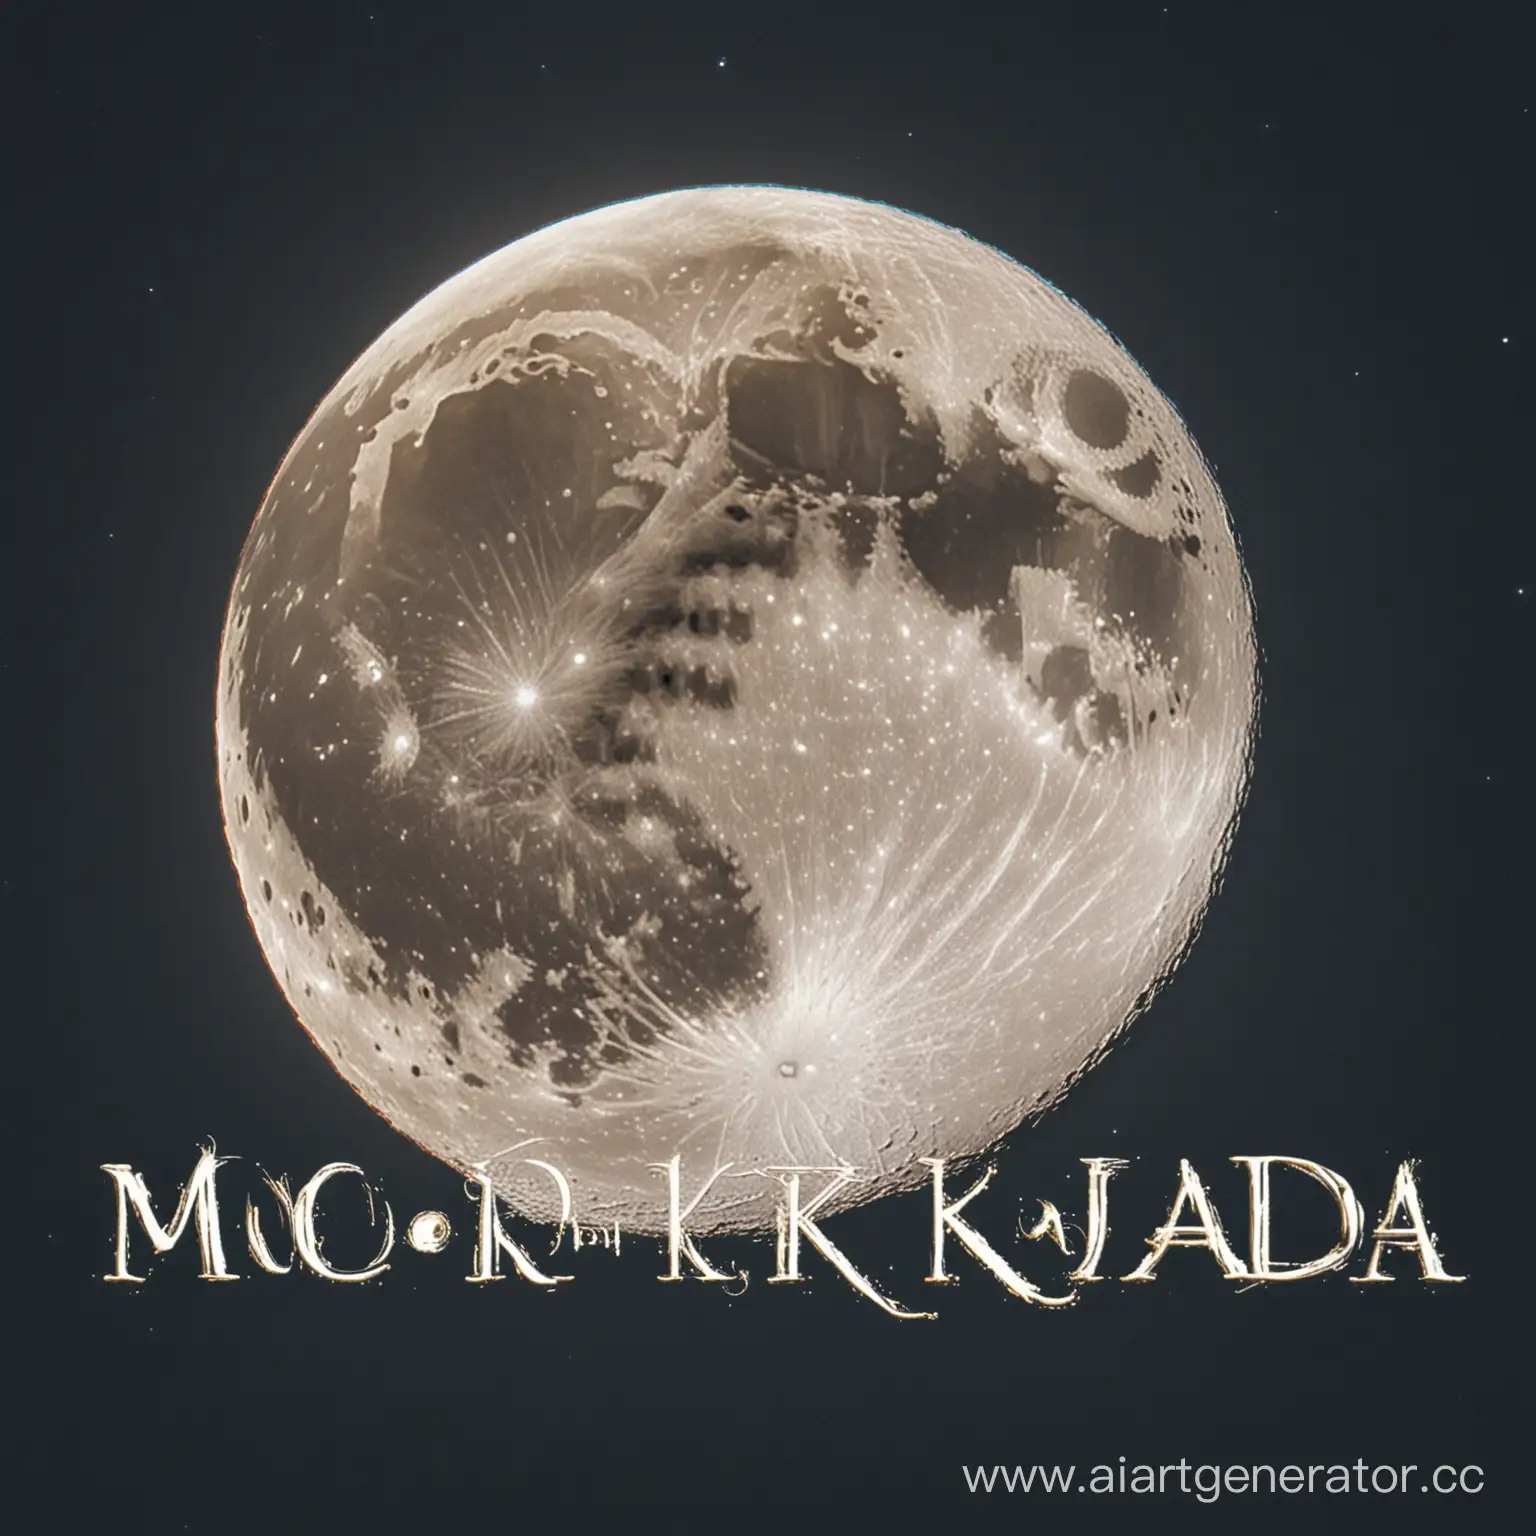 Картинка для канала красивая луна и надпись MOONKADA